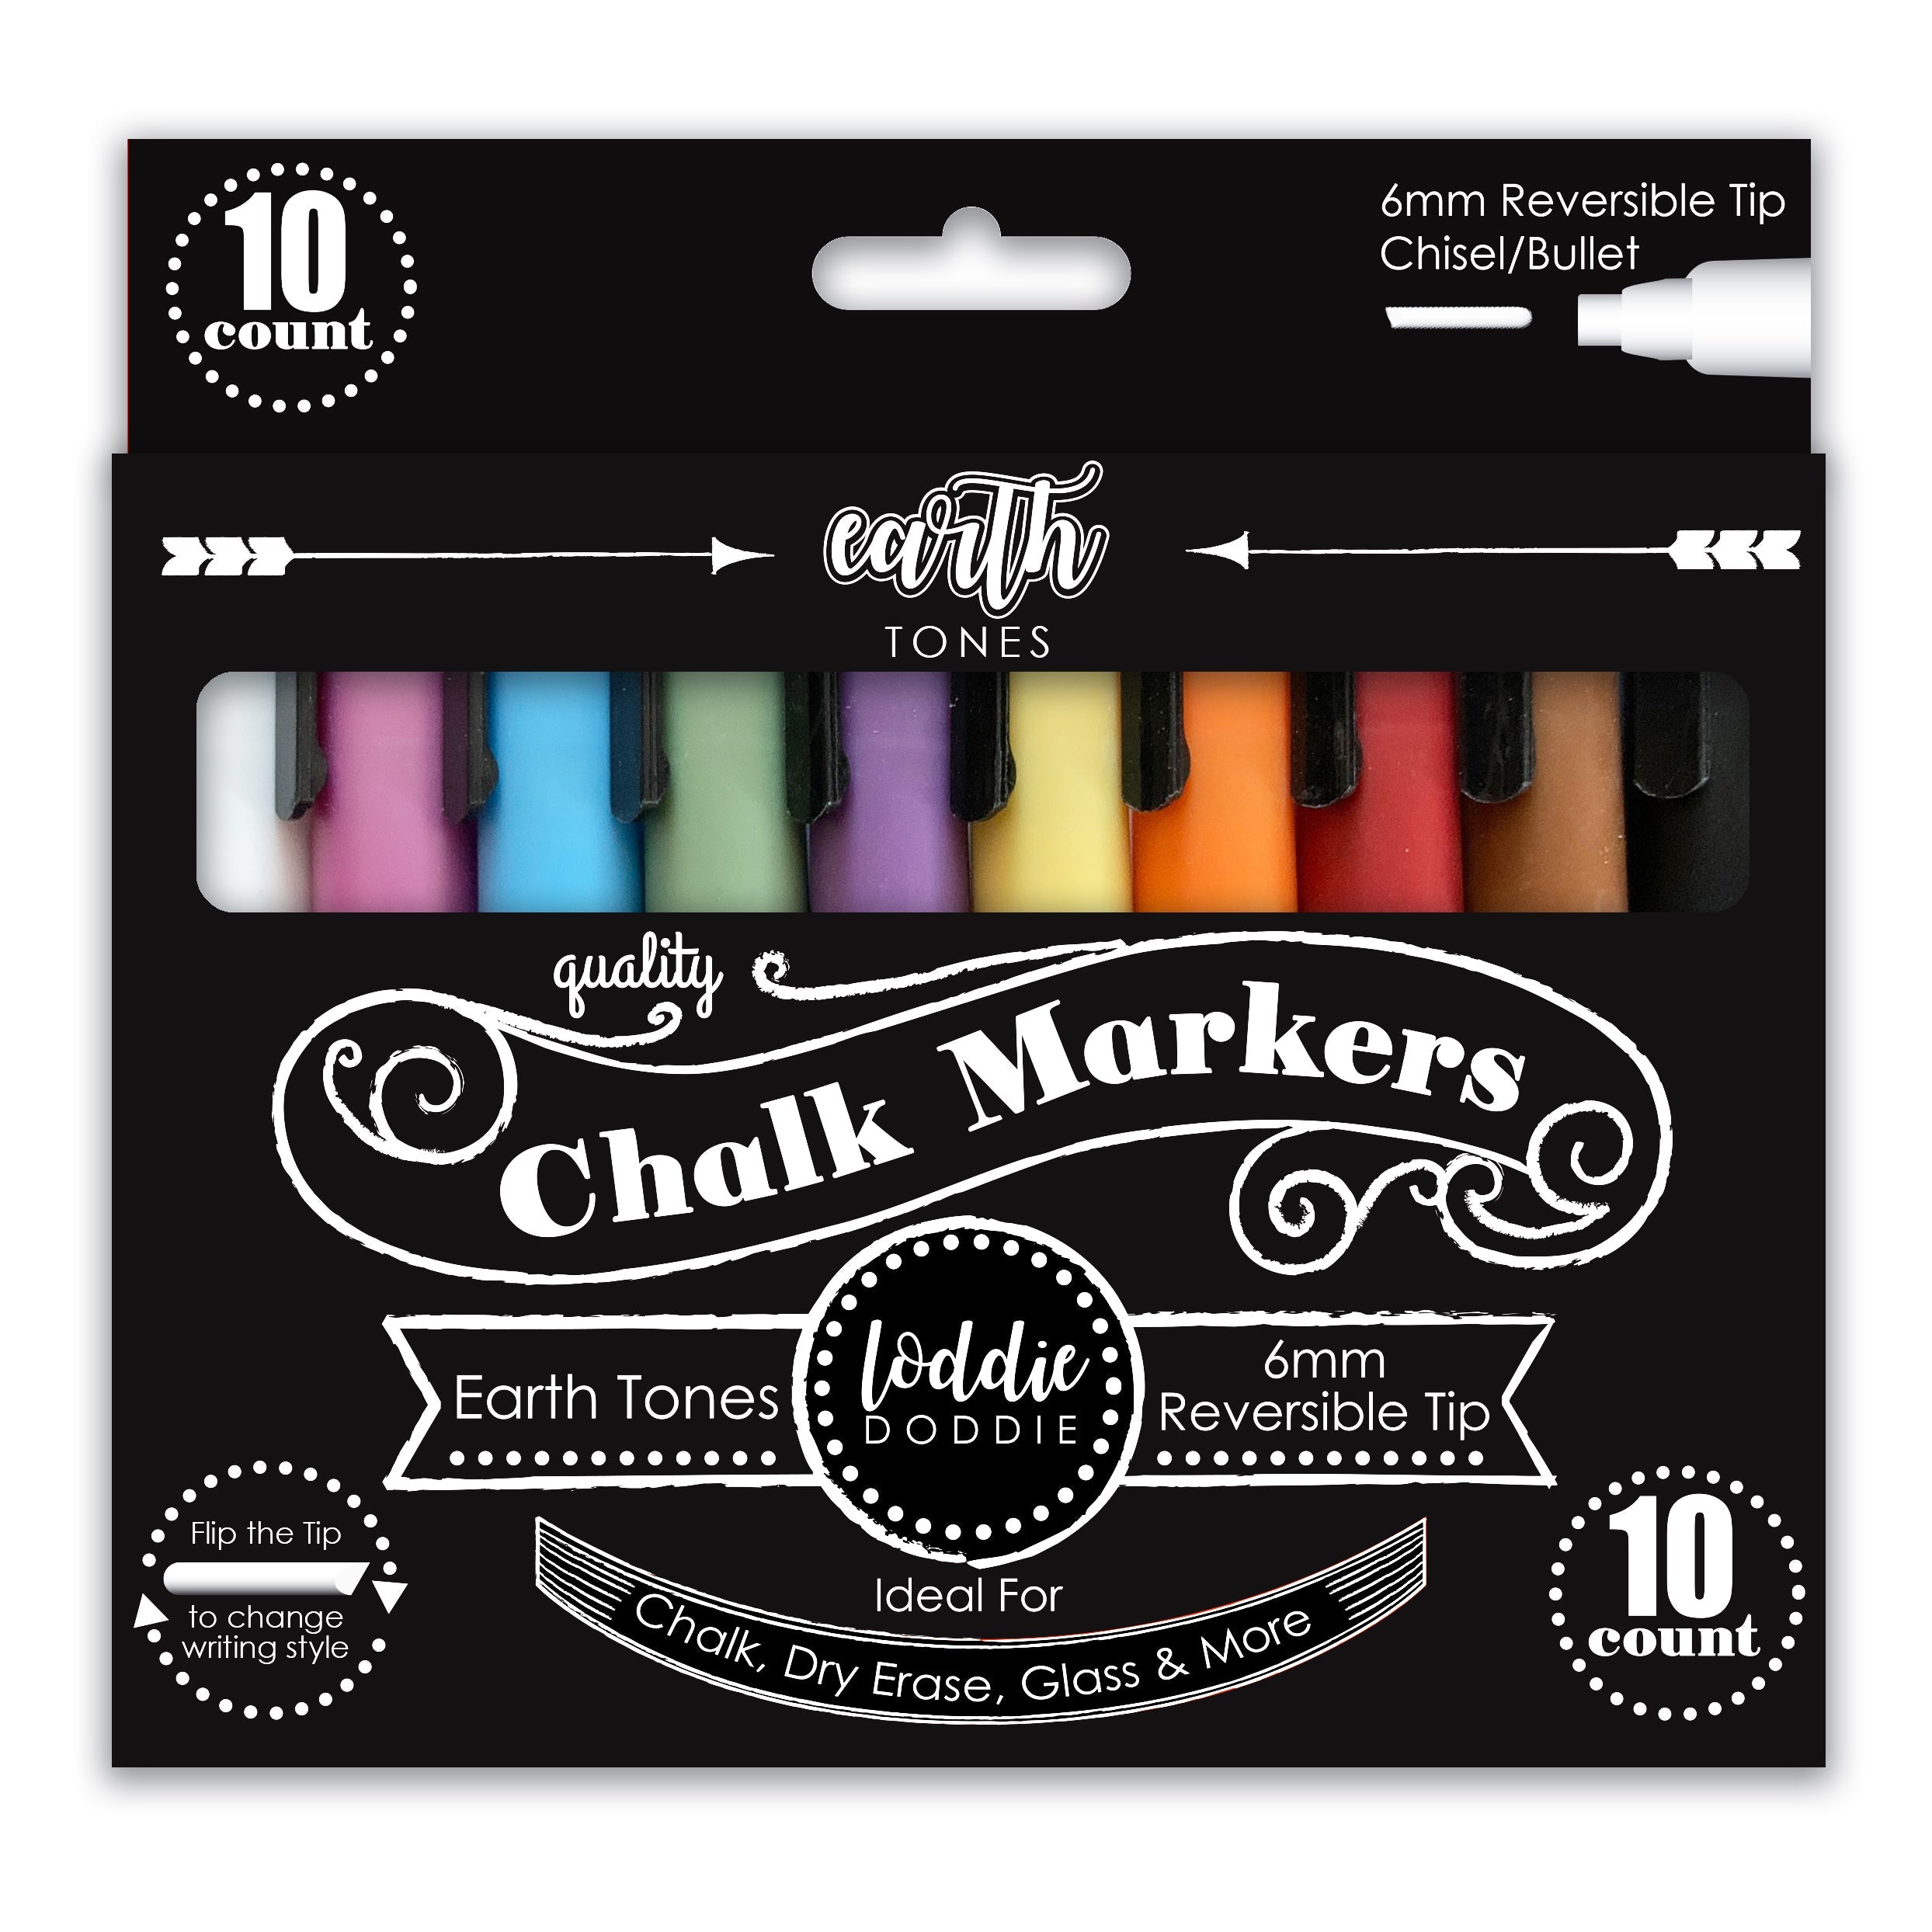 Liquid Chalk Markers for Blackboards - Bold Color Dry Erase Marker Pens - Chalk